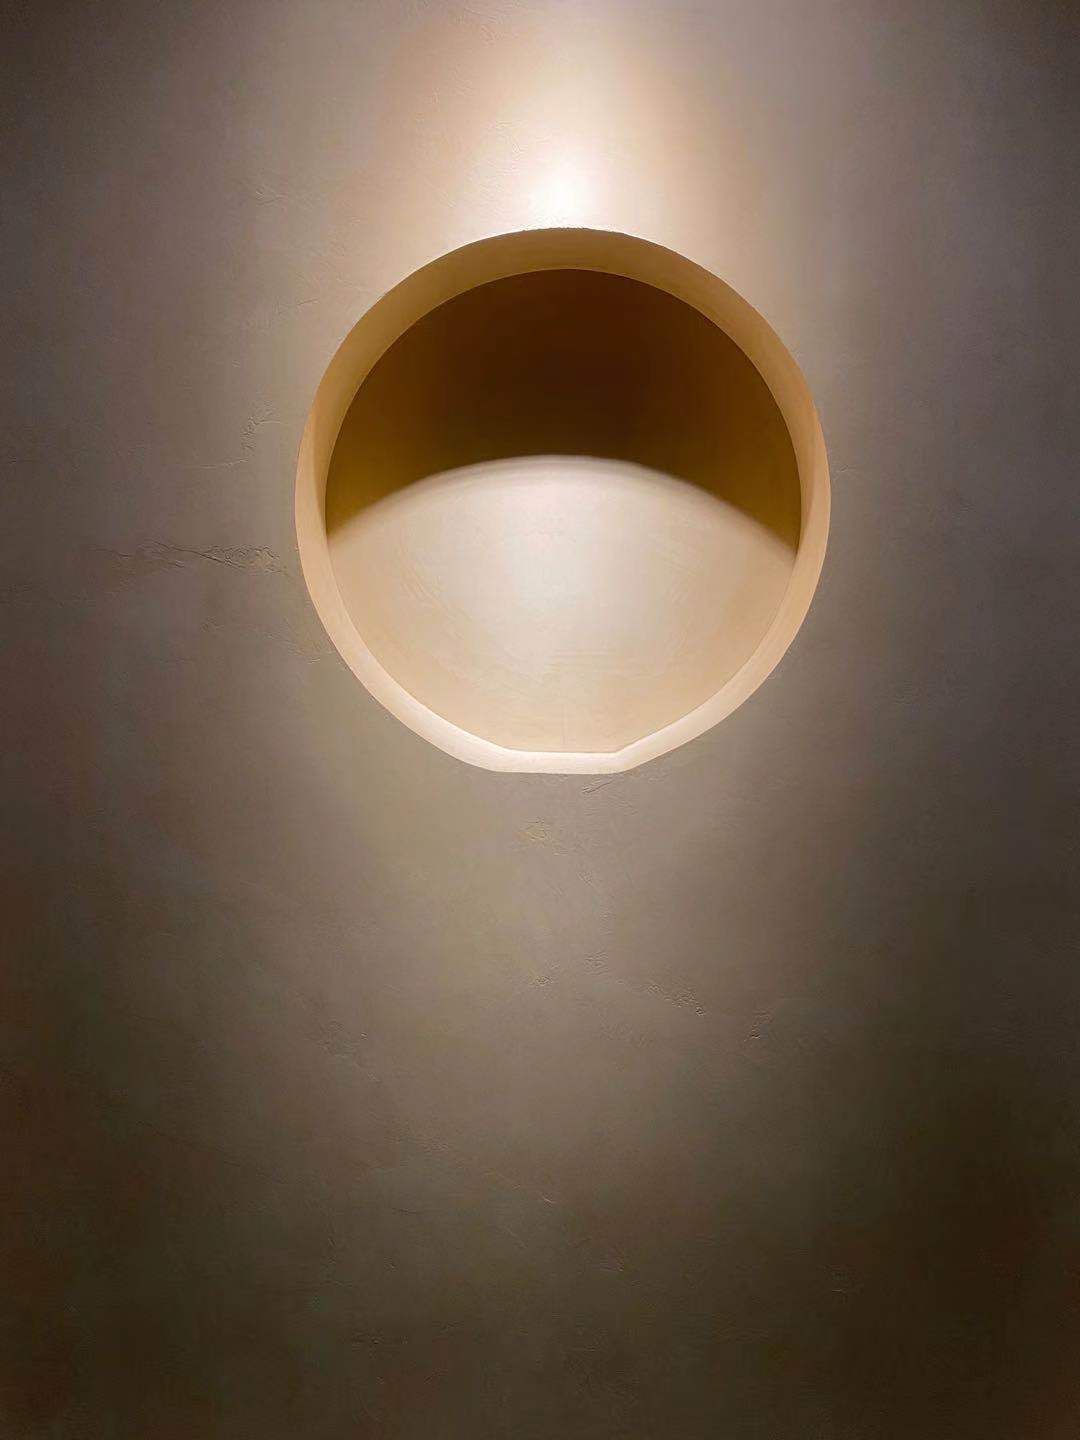 Mikrocement på væggen i et minimalistisk stil hus med belysning, der fremhæver belægningen